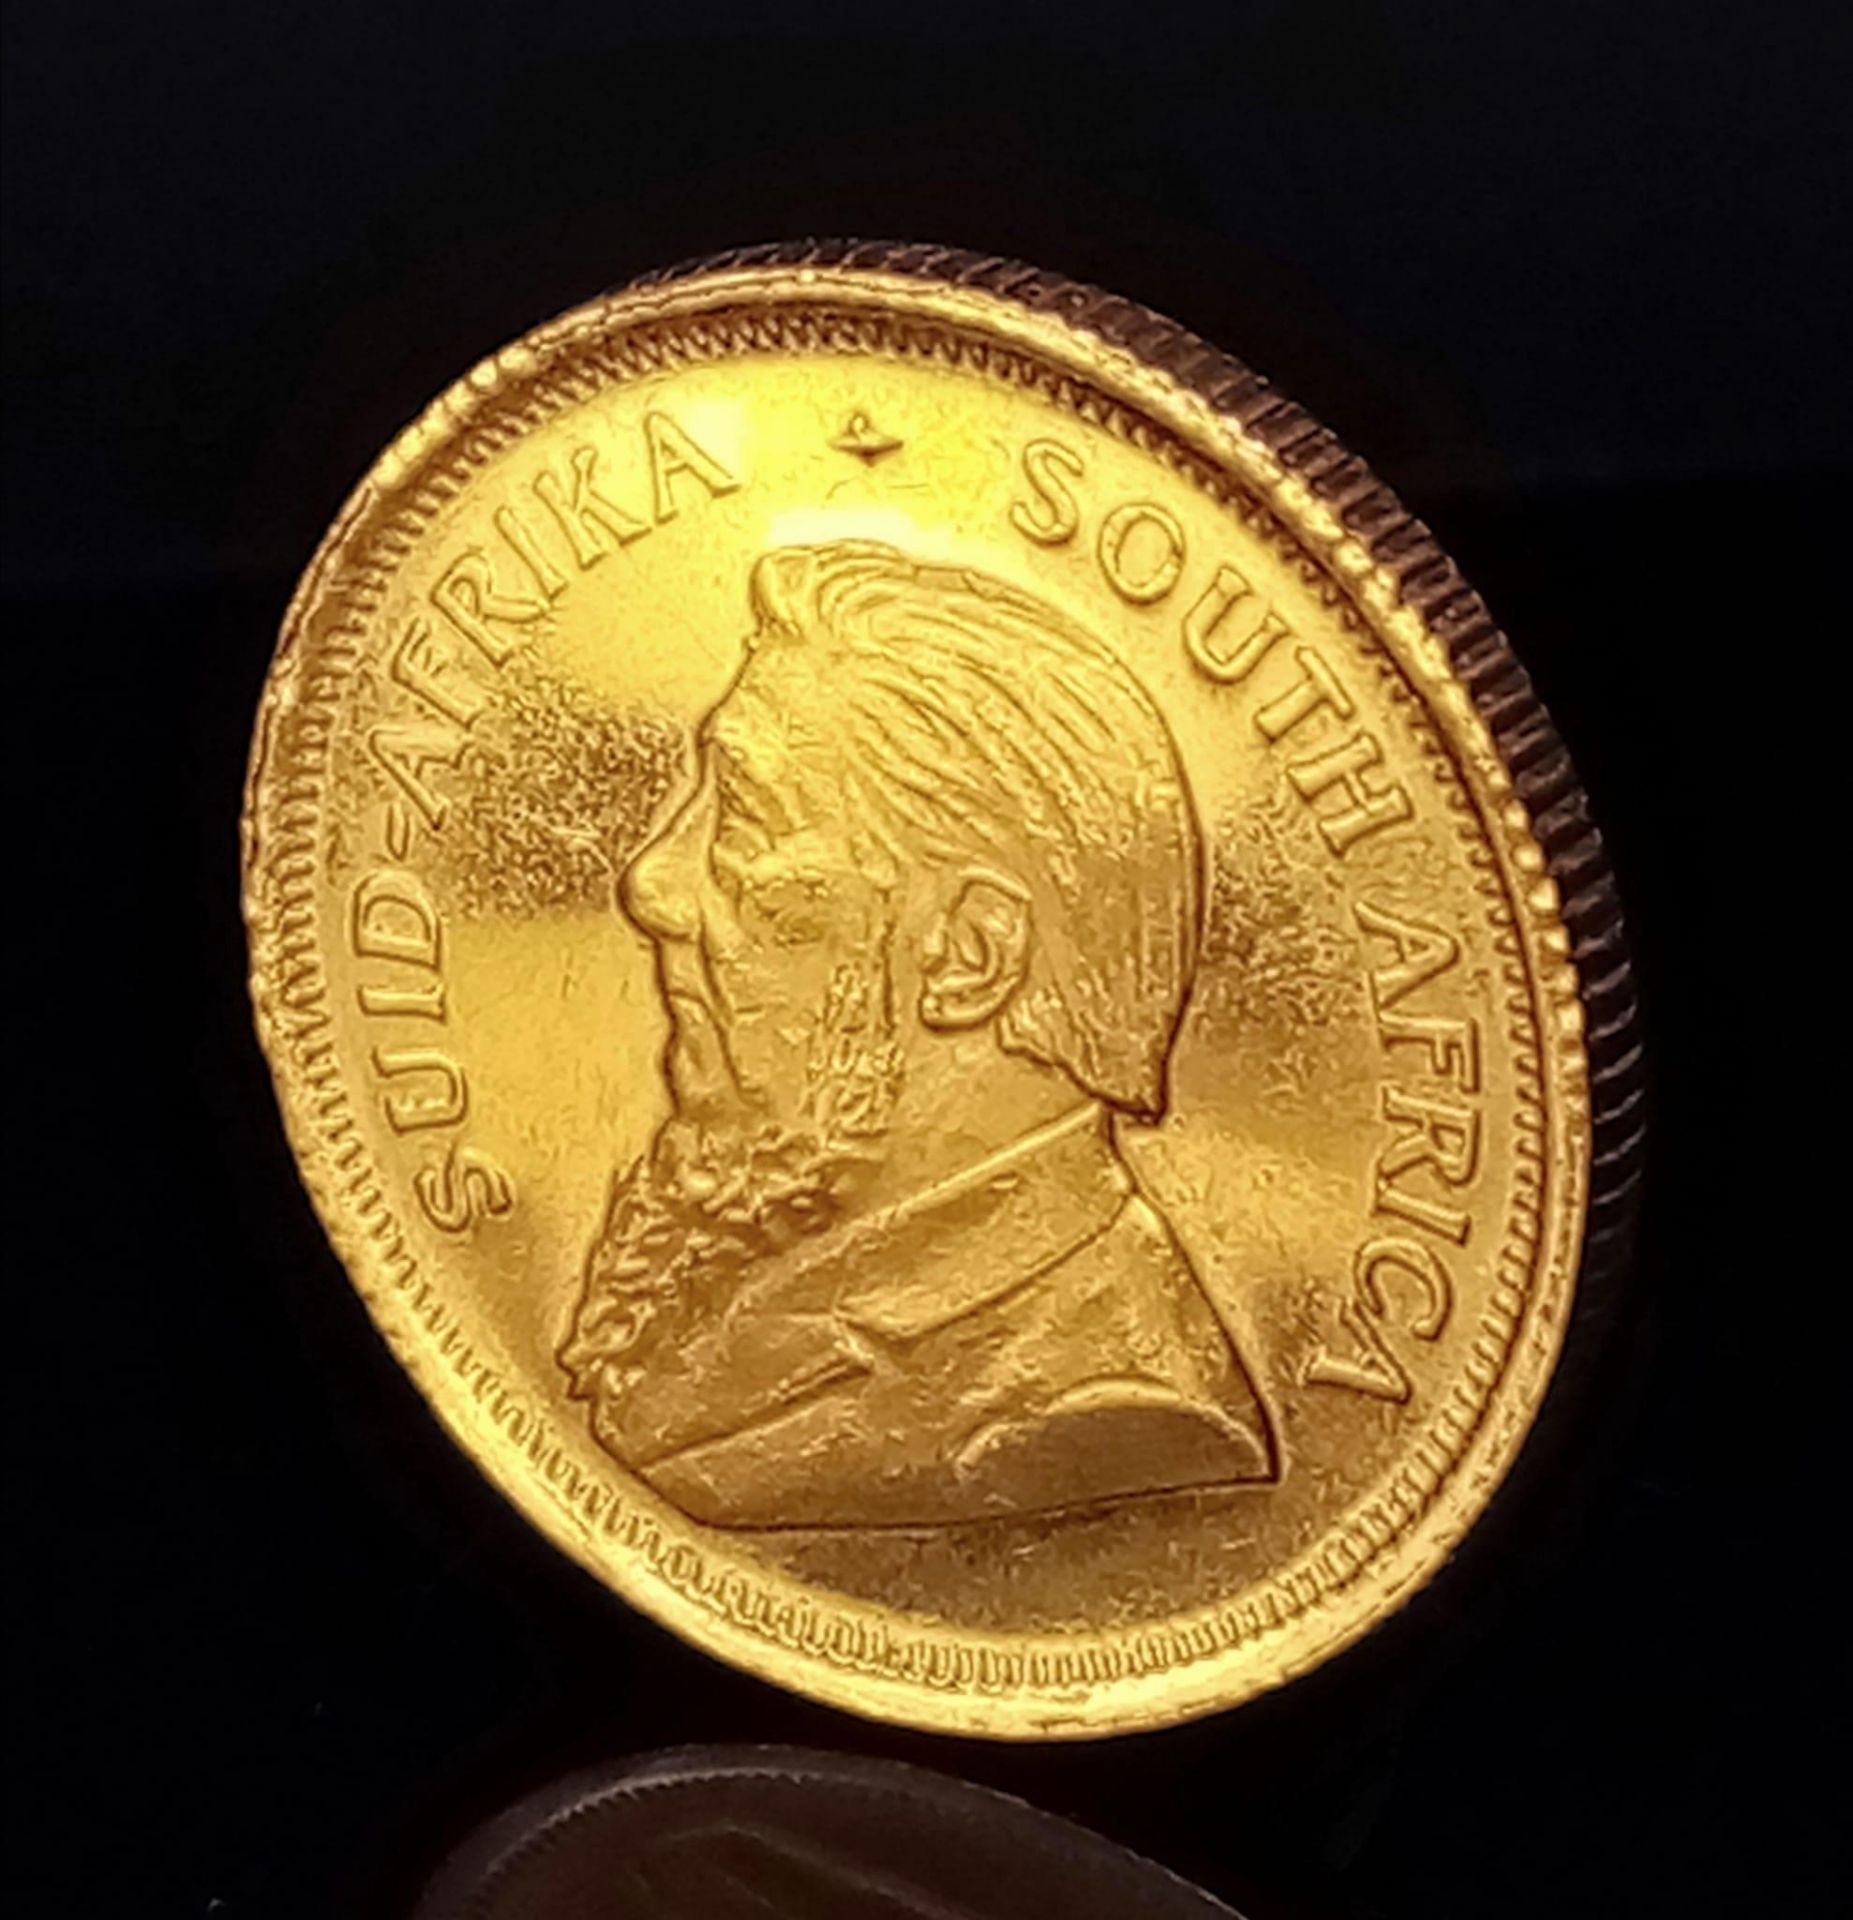 A 22K Gold 1/10 Ounce Krugerand Coin. 3.4g weight,